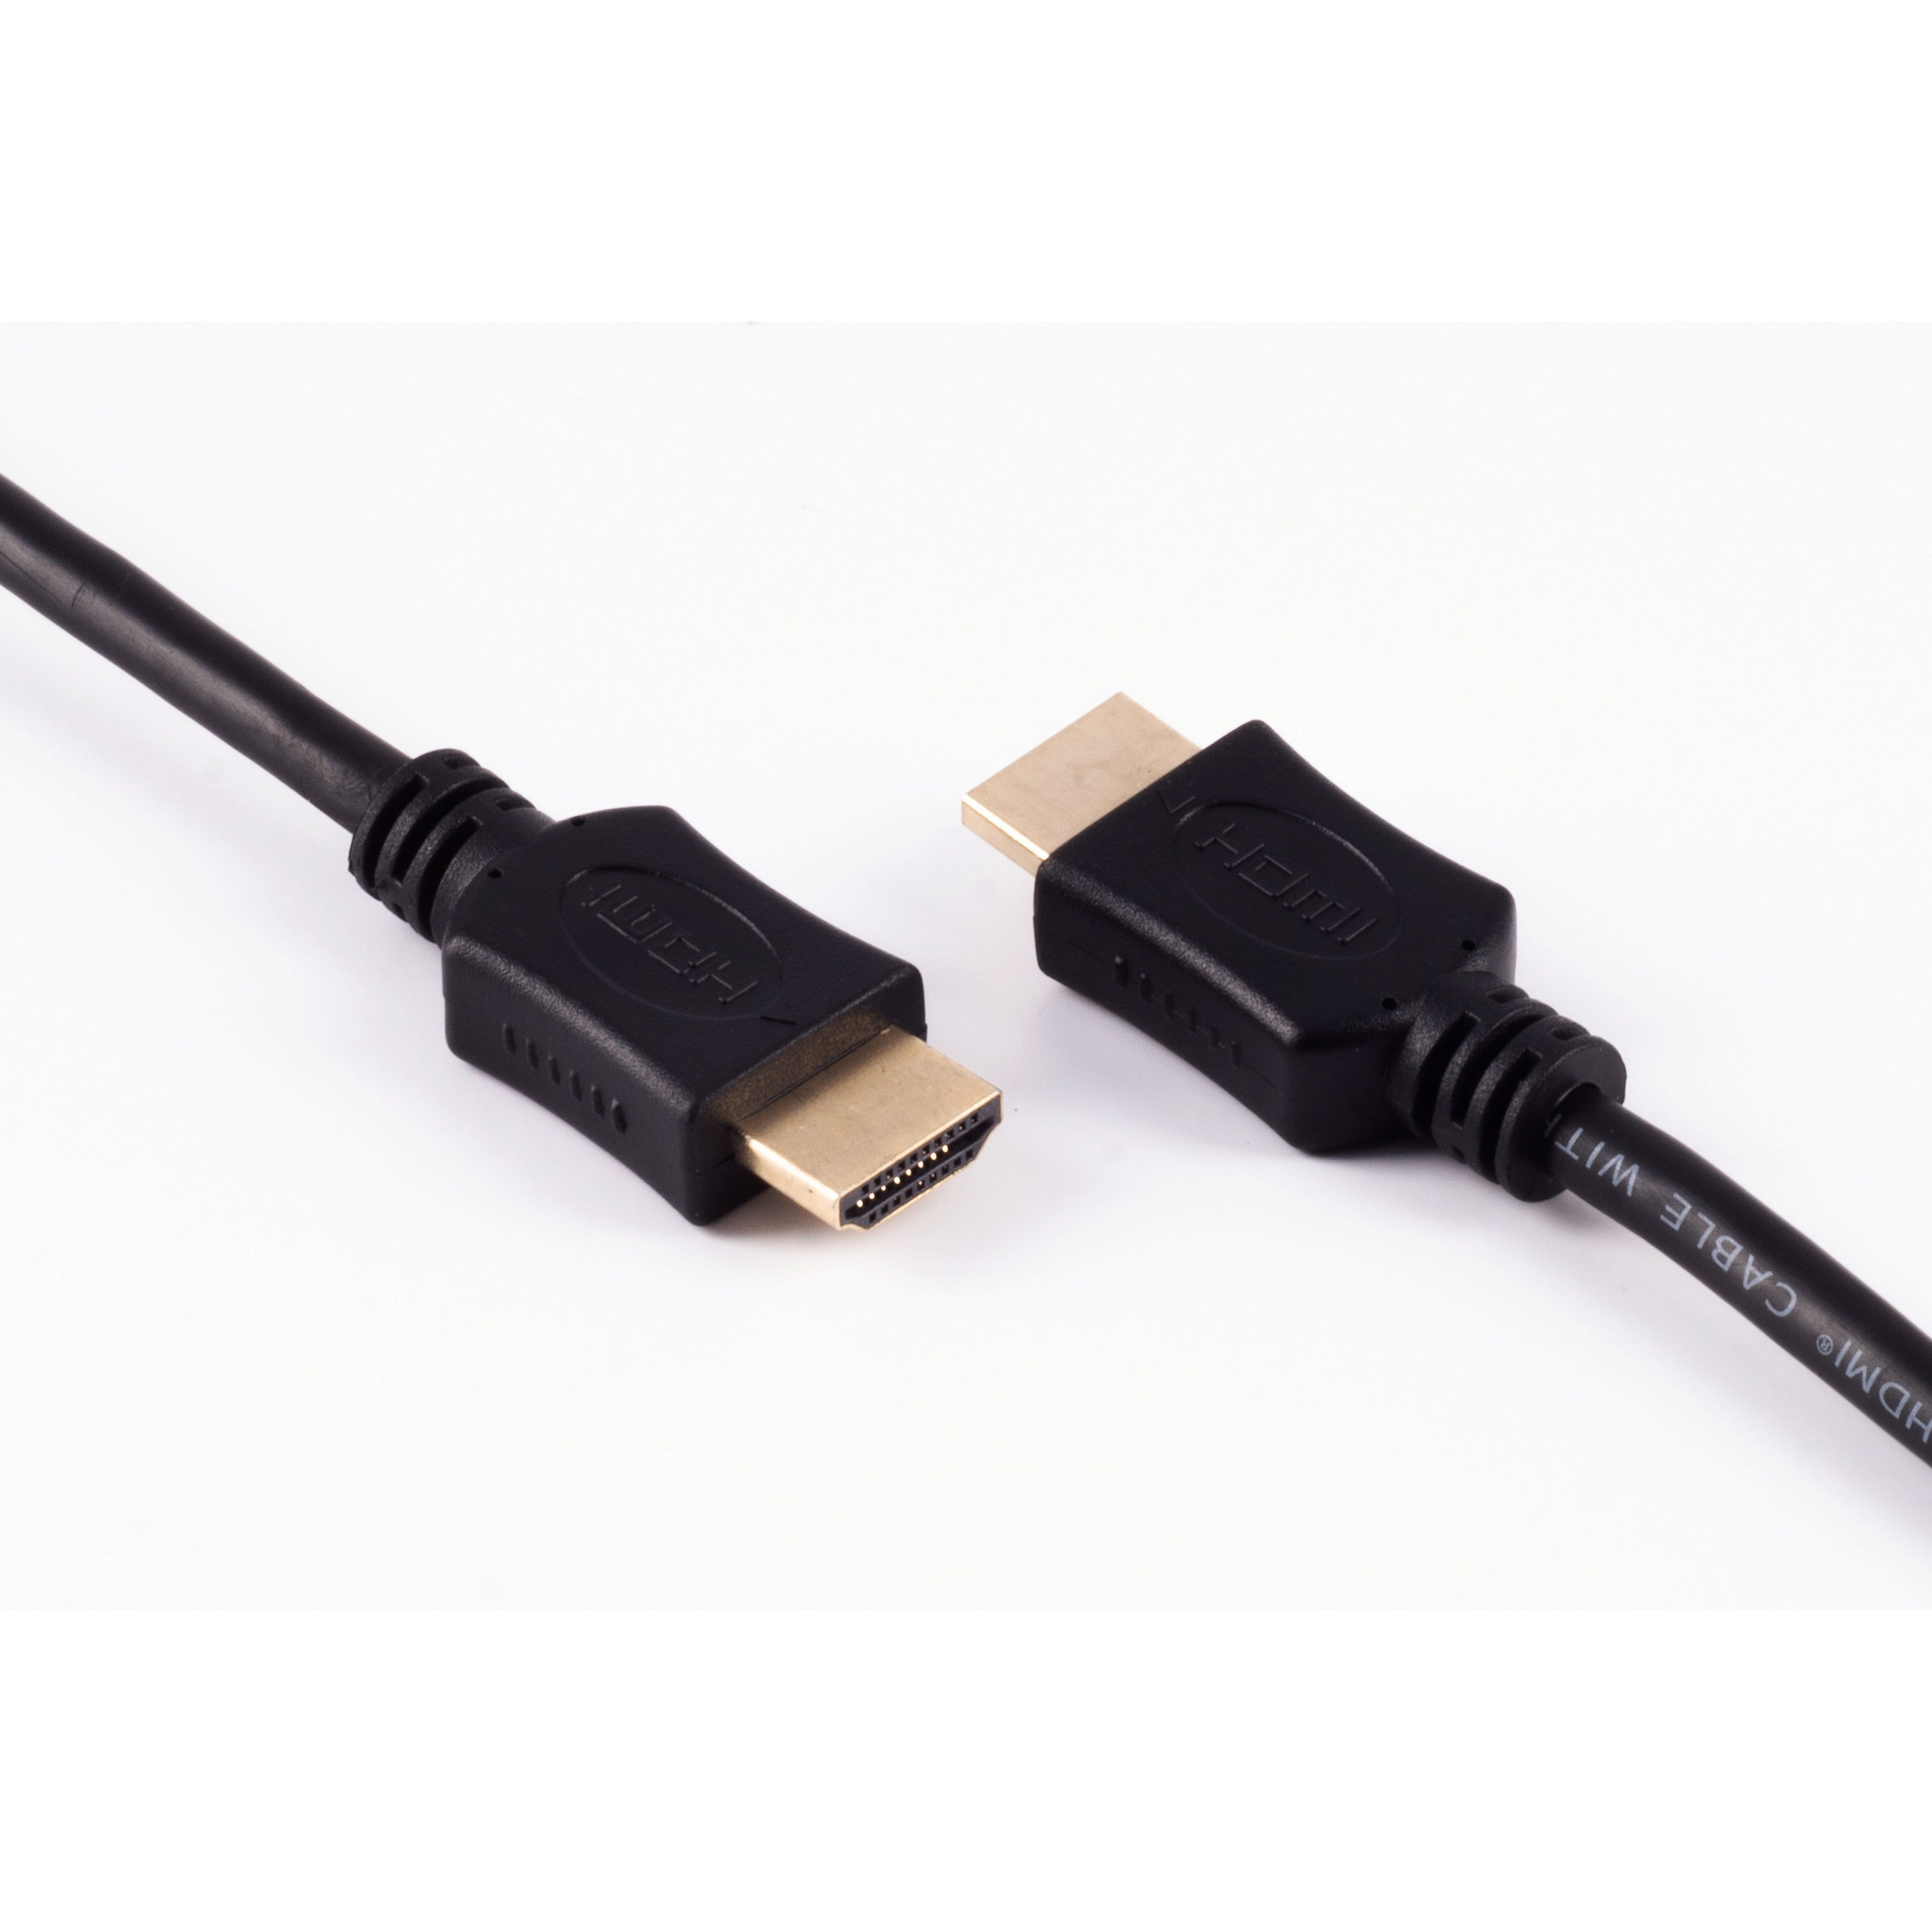 A-Stecker Kabel HDMI verg. HEAC HDMI 2m SHIVERPEAKS A-Stecker / HDMI